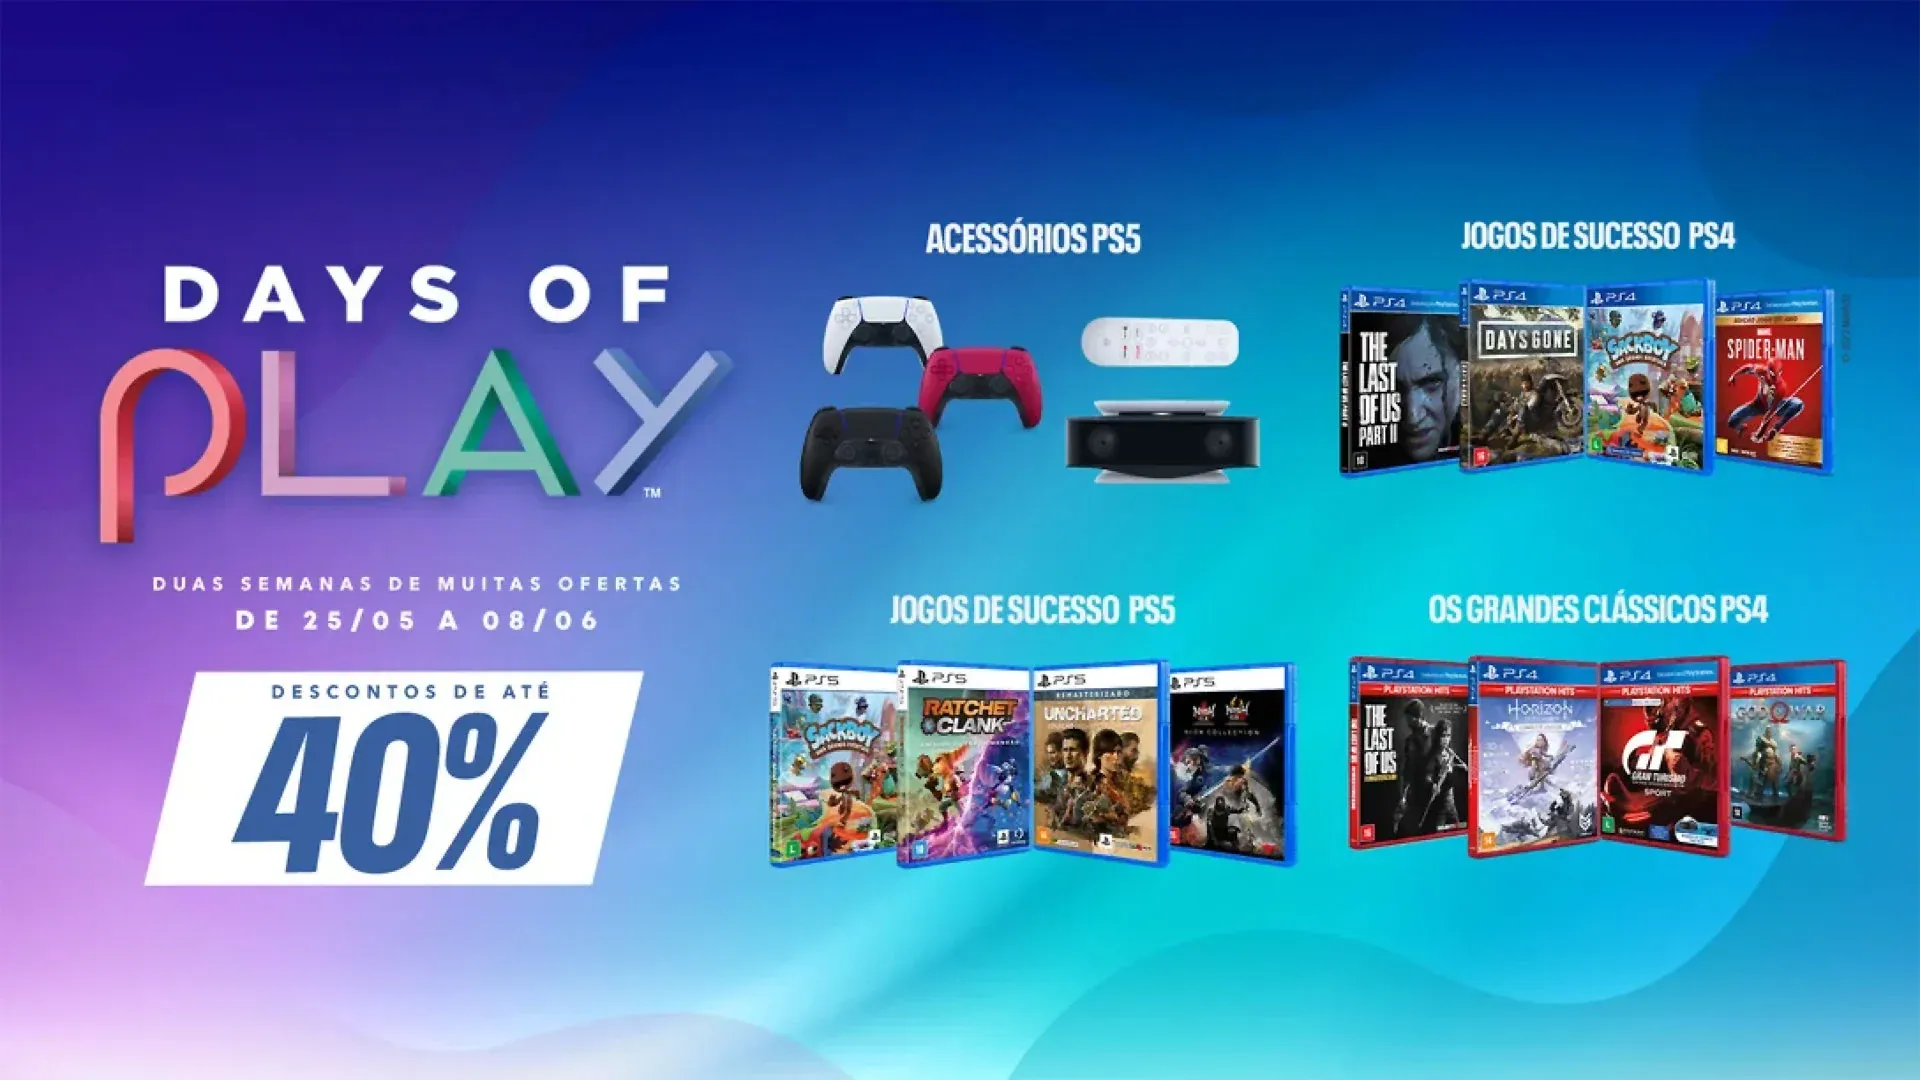 Imagem da promoção Days of Play com os itens que sofreram descontos: acessórios de PS5, jogos de sucesso do PS4, jogos de sucesso do PS5 e clássicos do PS4.